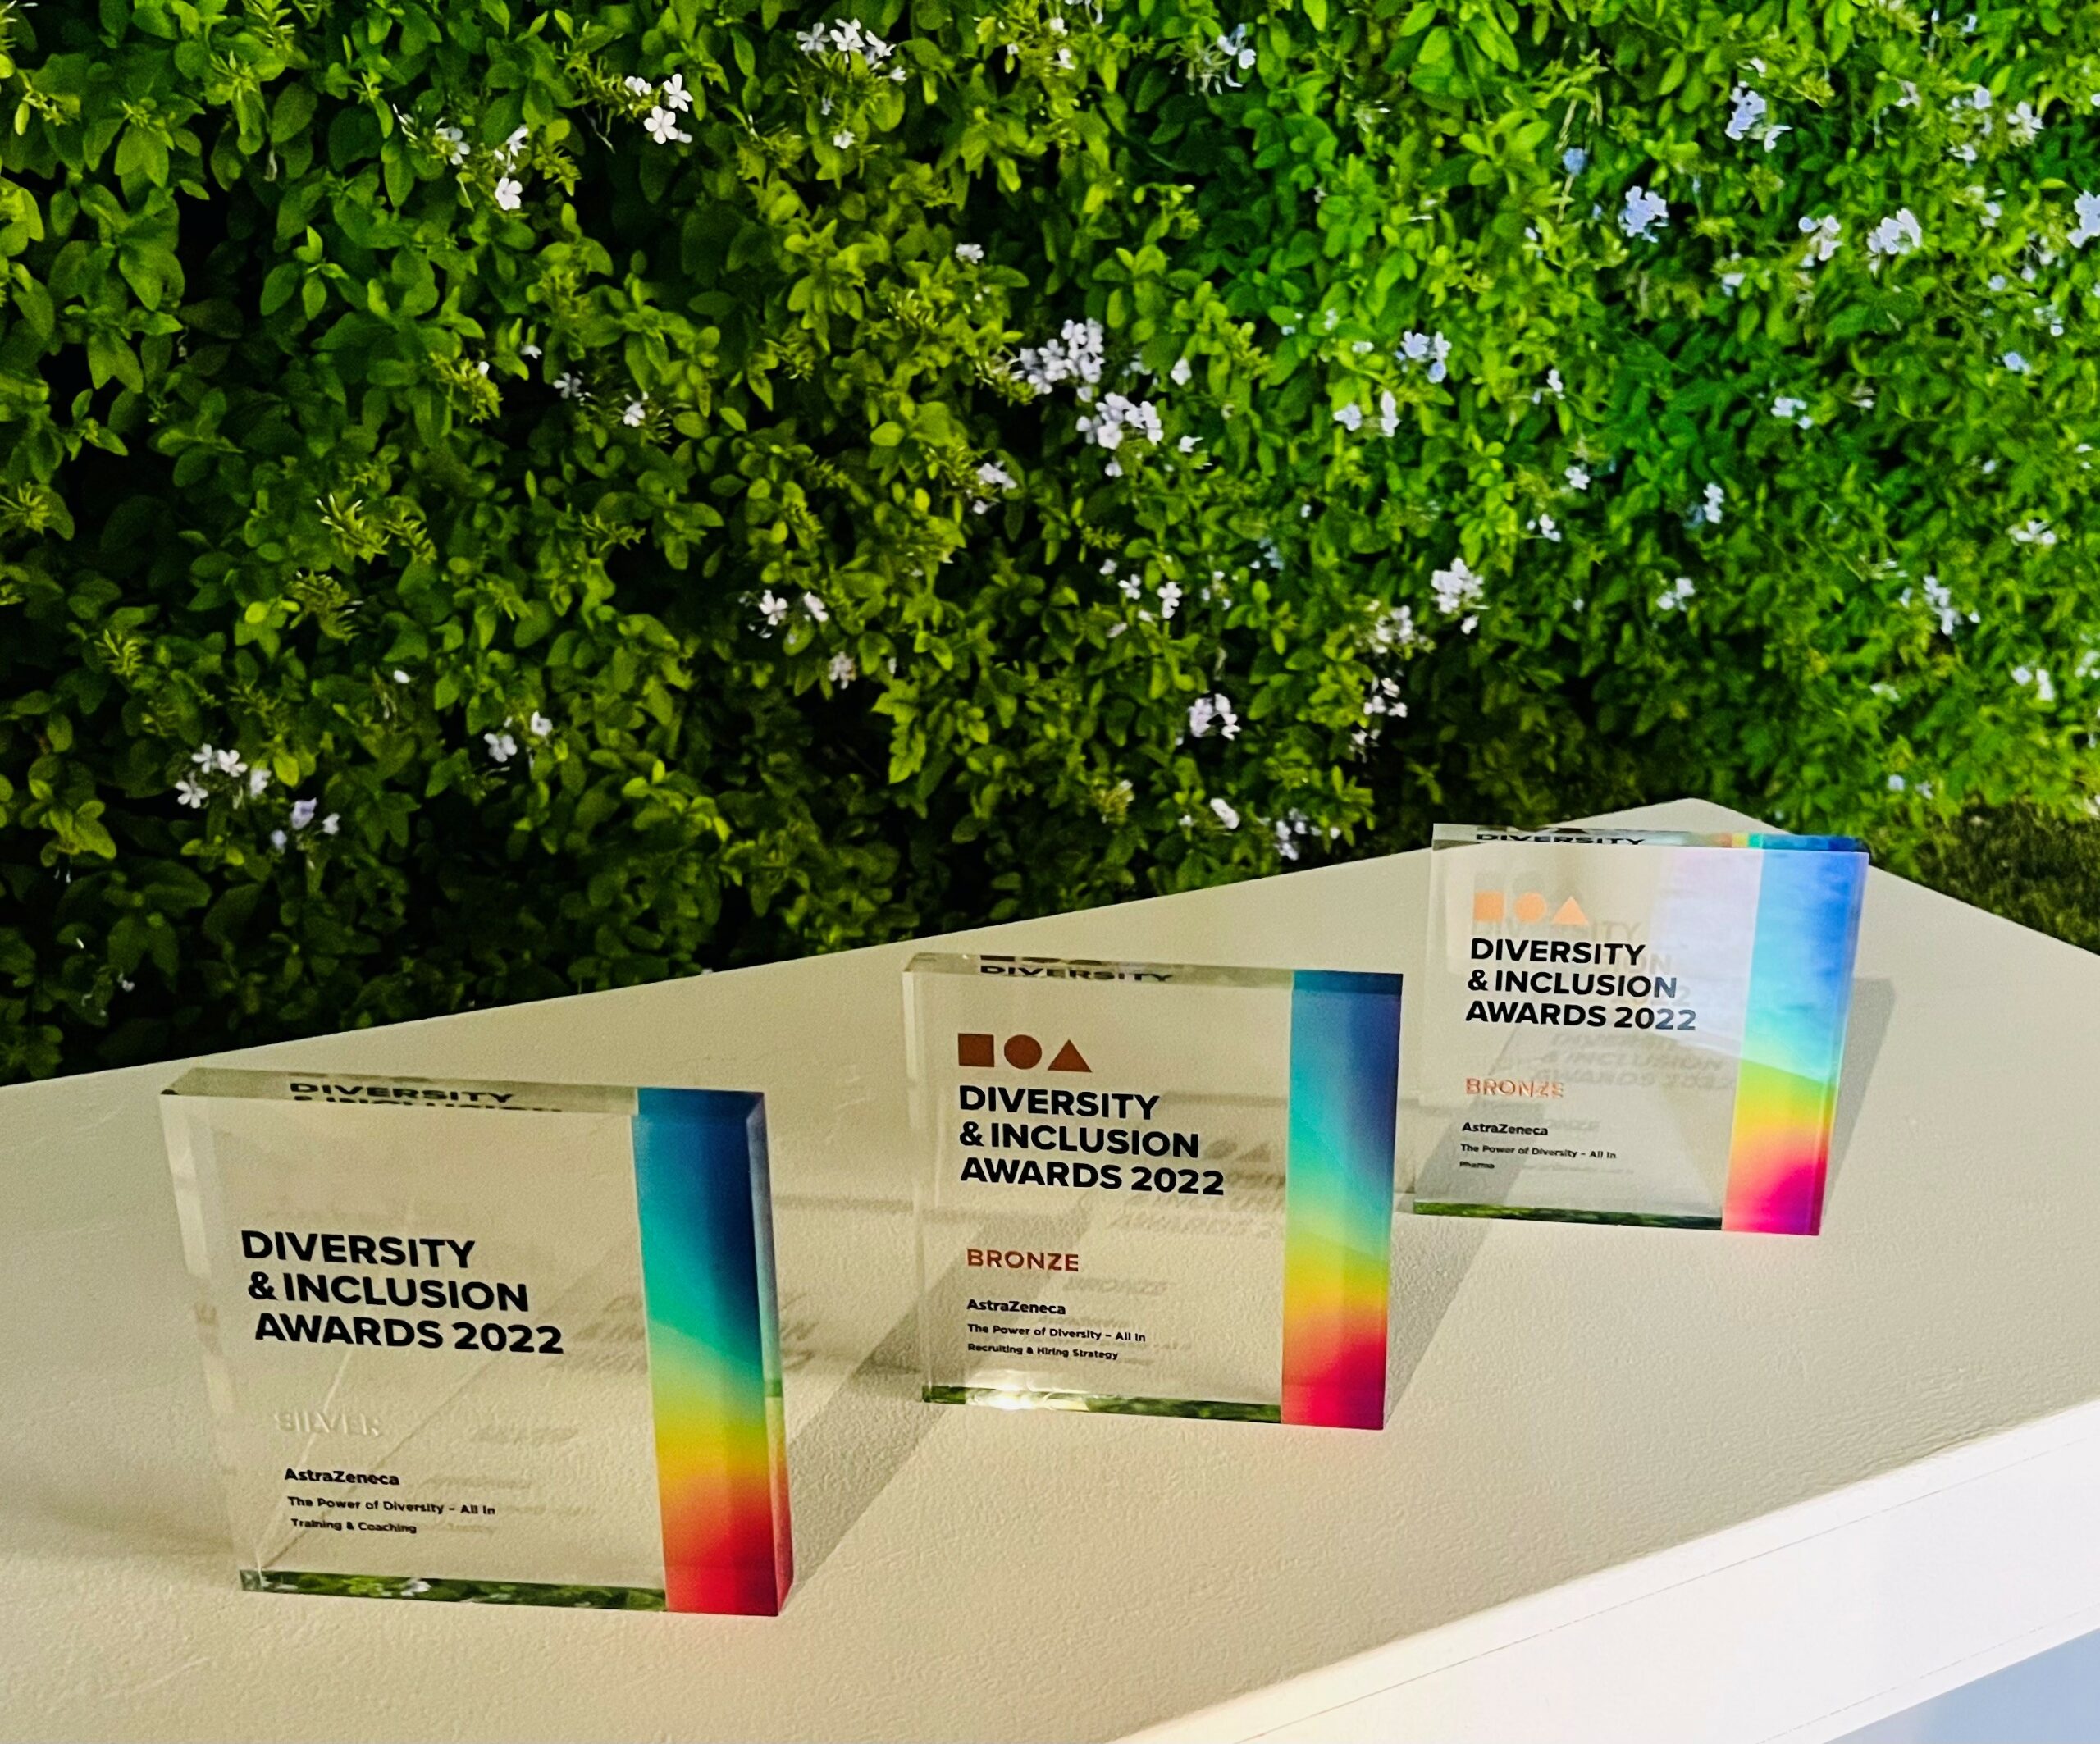 Τριπλή βράβευση για την AstraZeneca στα Diversity & Inclusion Awards 2022